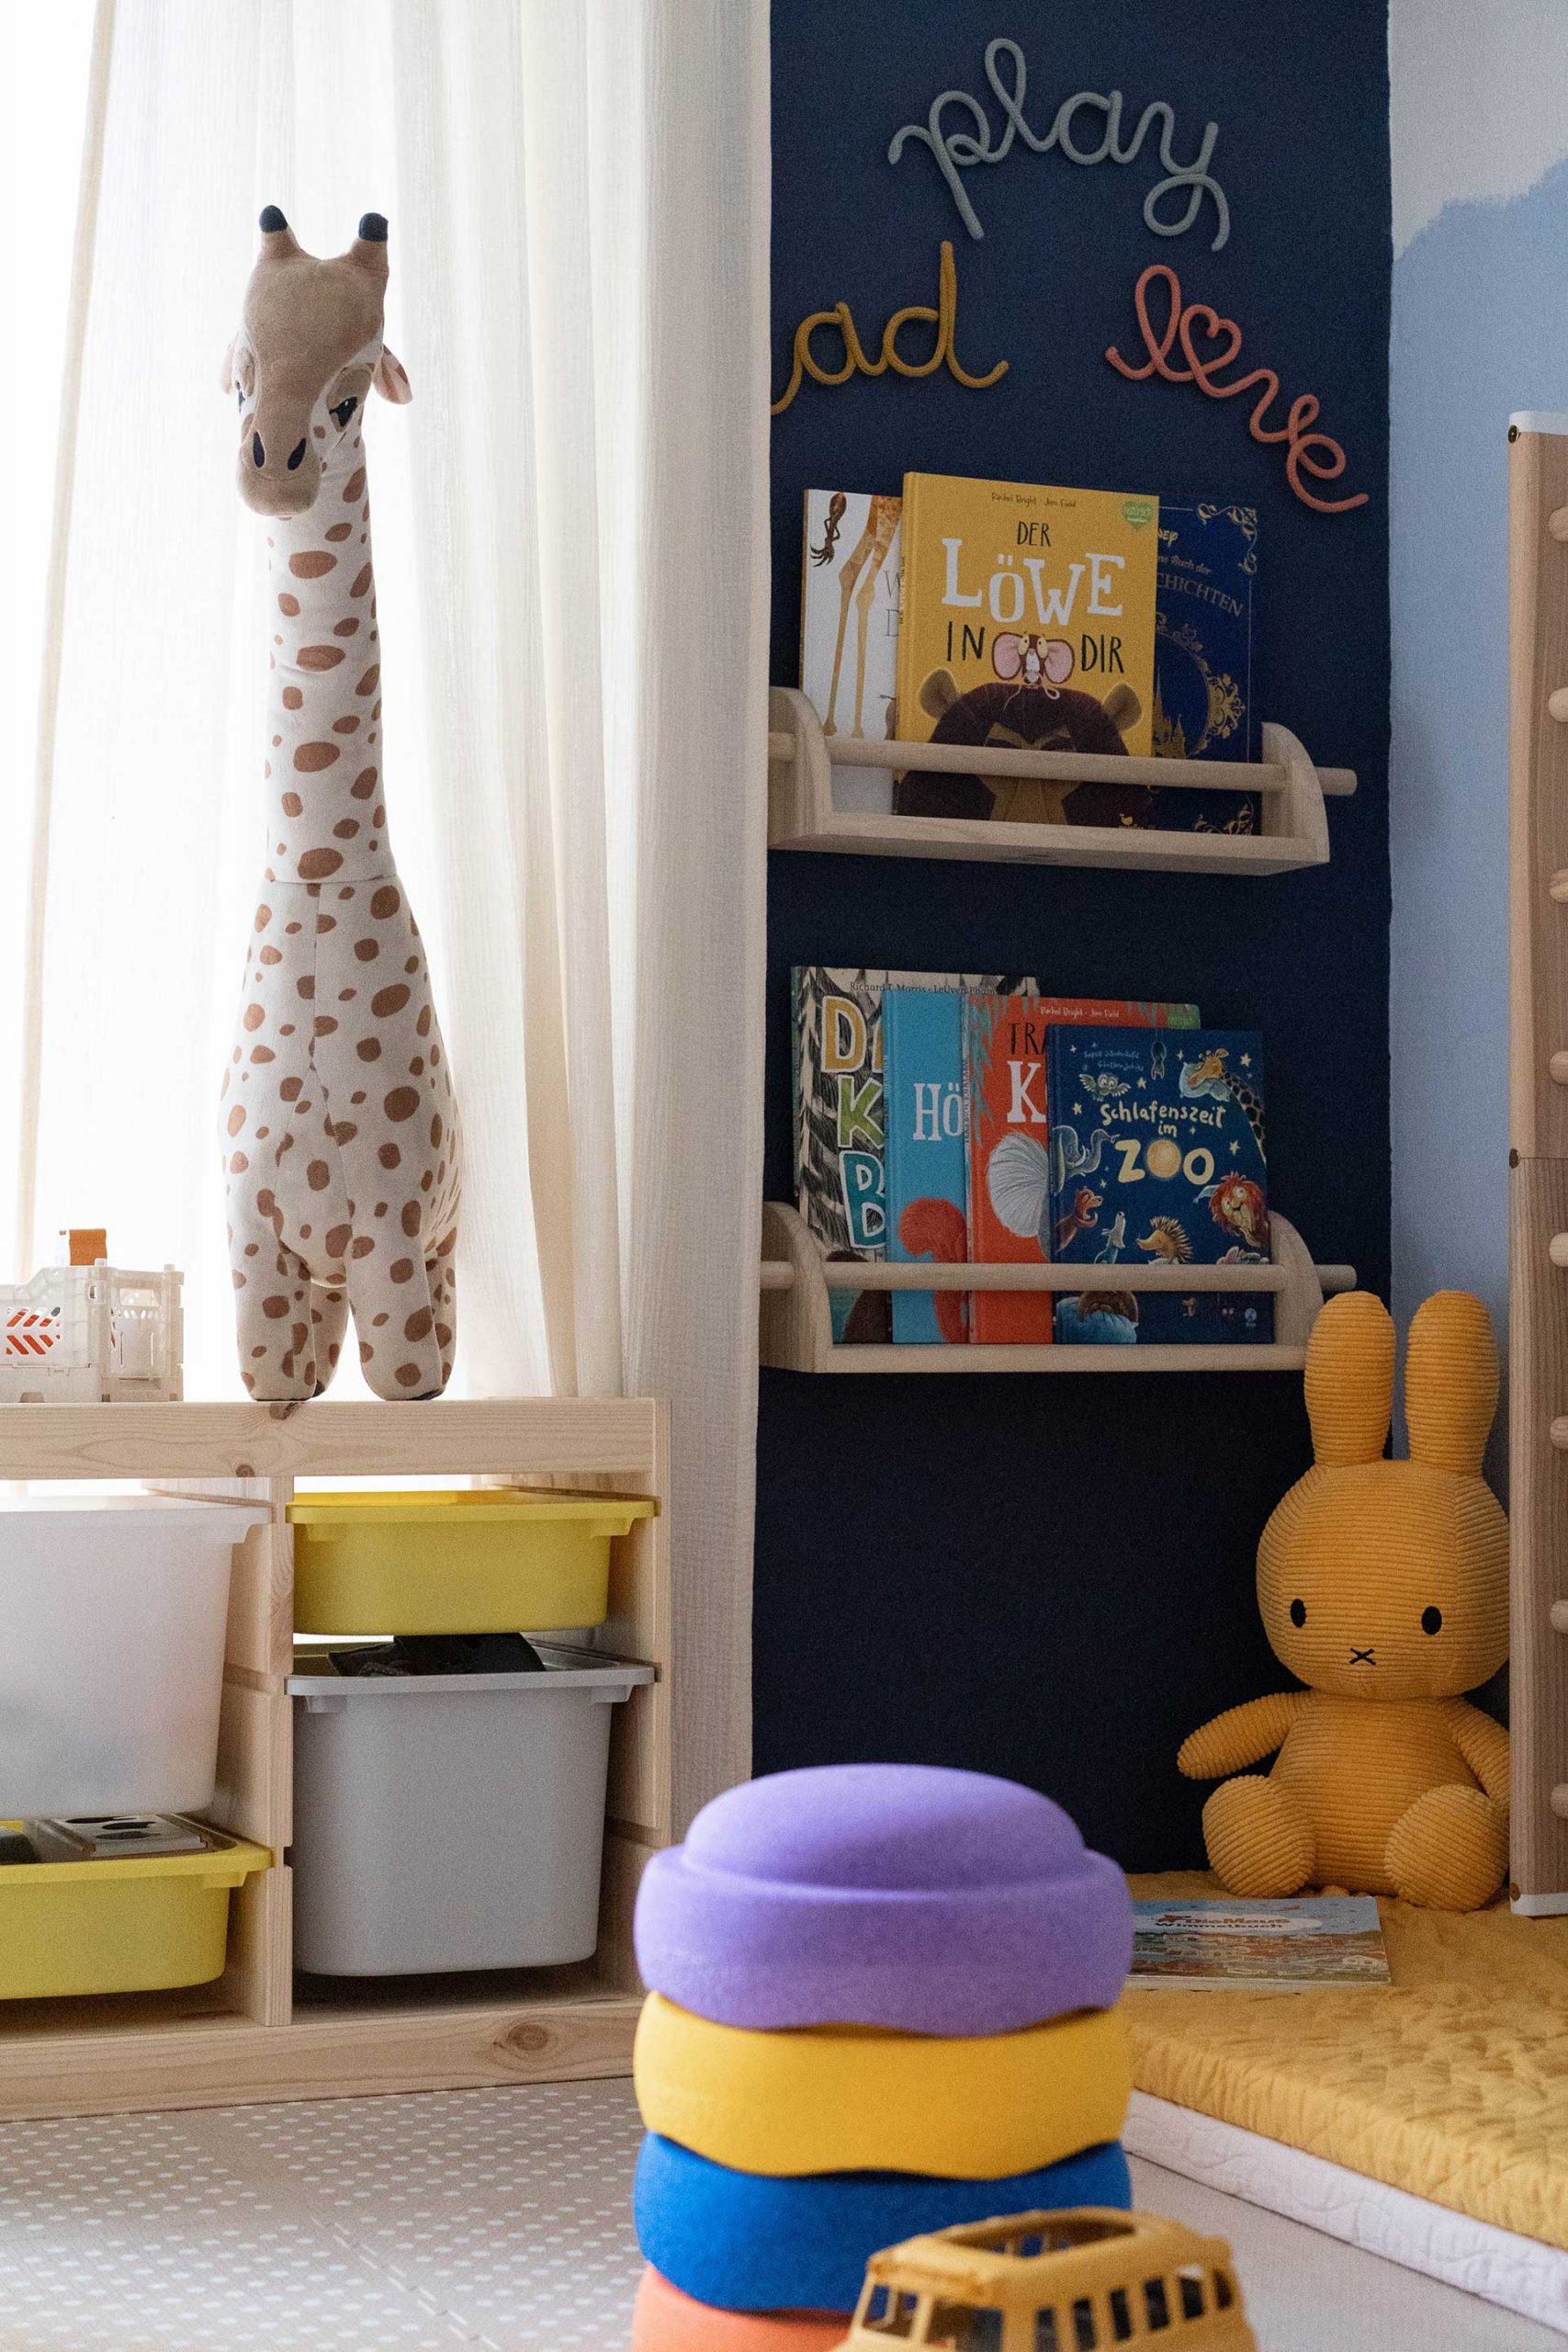 Du möchtest ein schönes Kinderzimmer einrichten? Meine Tipps für Kleinkinder (1-2 Jahre) findest du jetzt am Mamablog www.whoismocca.com